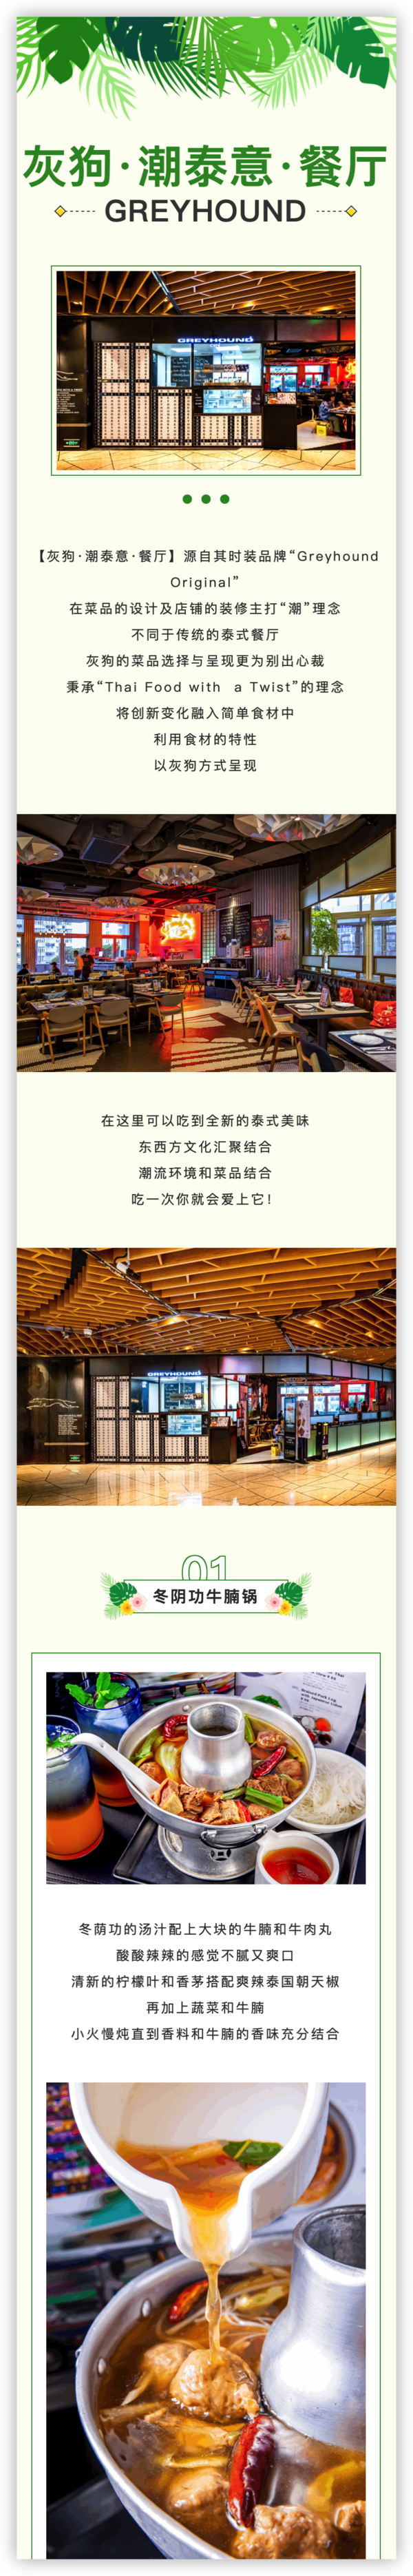 上海iapm店 灰狗·潮泰意·餐厅GREYHOUND 双人泰餐